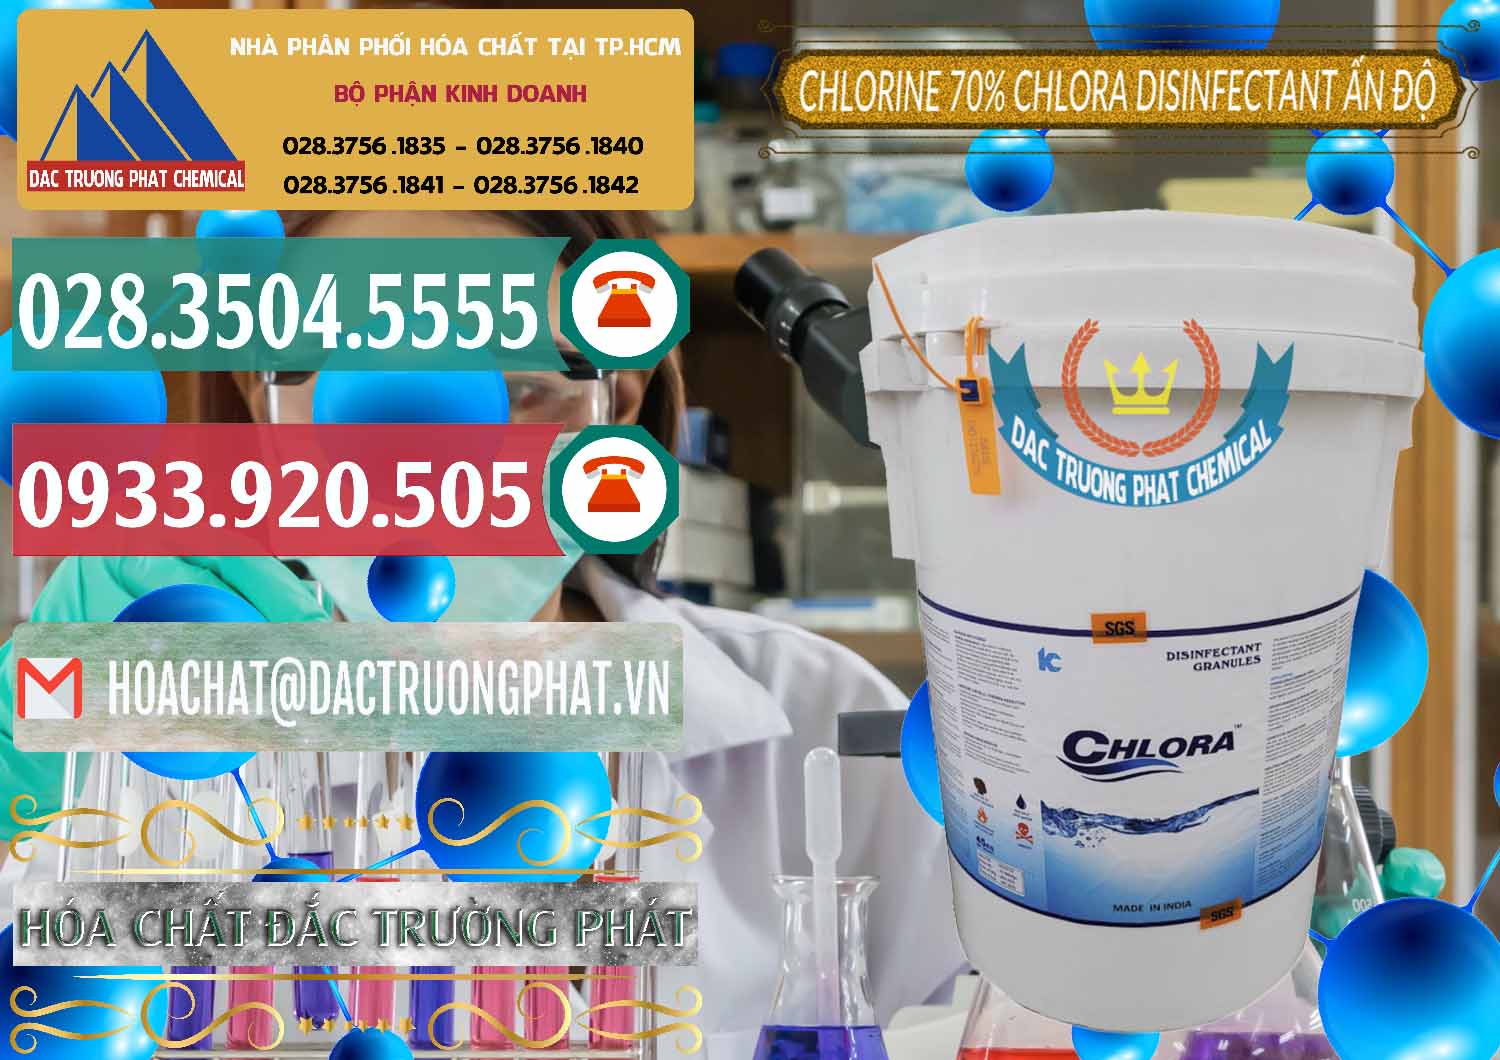 Công ty bán ( cung ứng ) Chlorine – Clorin 70% Chlora Disinfectant Ấn Độ India - 0213 - Đơn vị chuyên bán ( phân phối ) hóa chất tại TP.HCM - muabanhoachat.vn